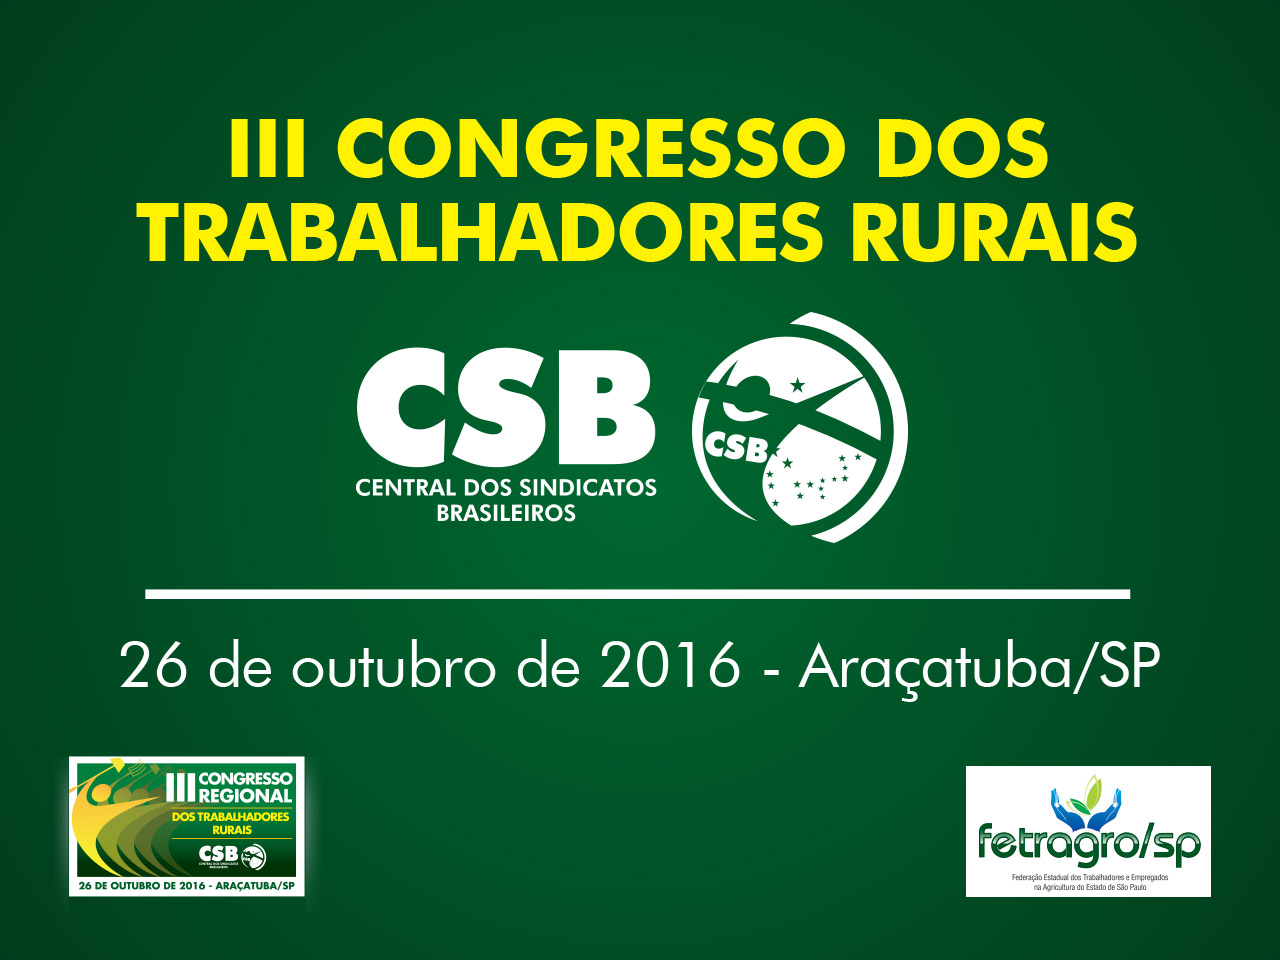 III Congresso dos Trabalhadores Rurais de SP da CSB será realizado em Araçatuba